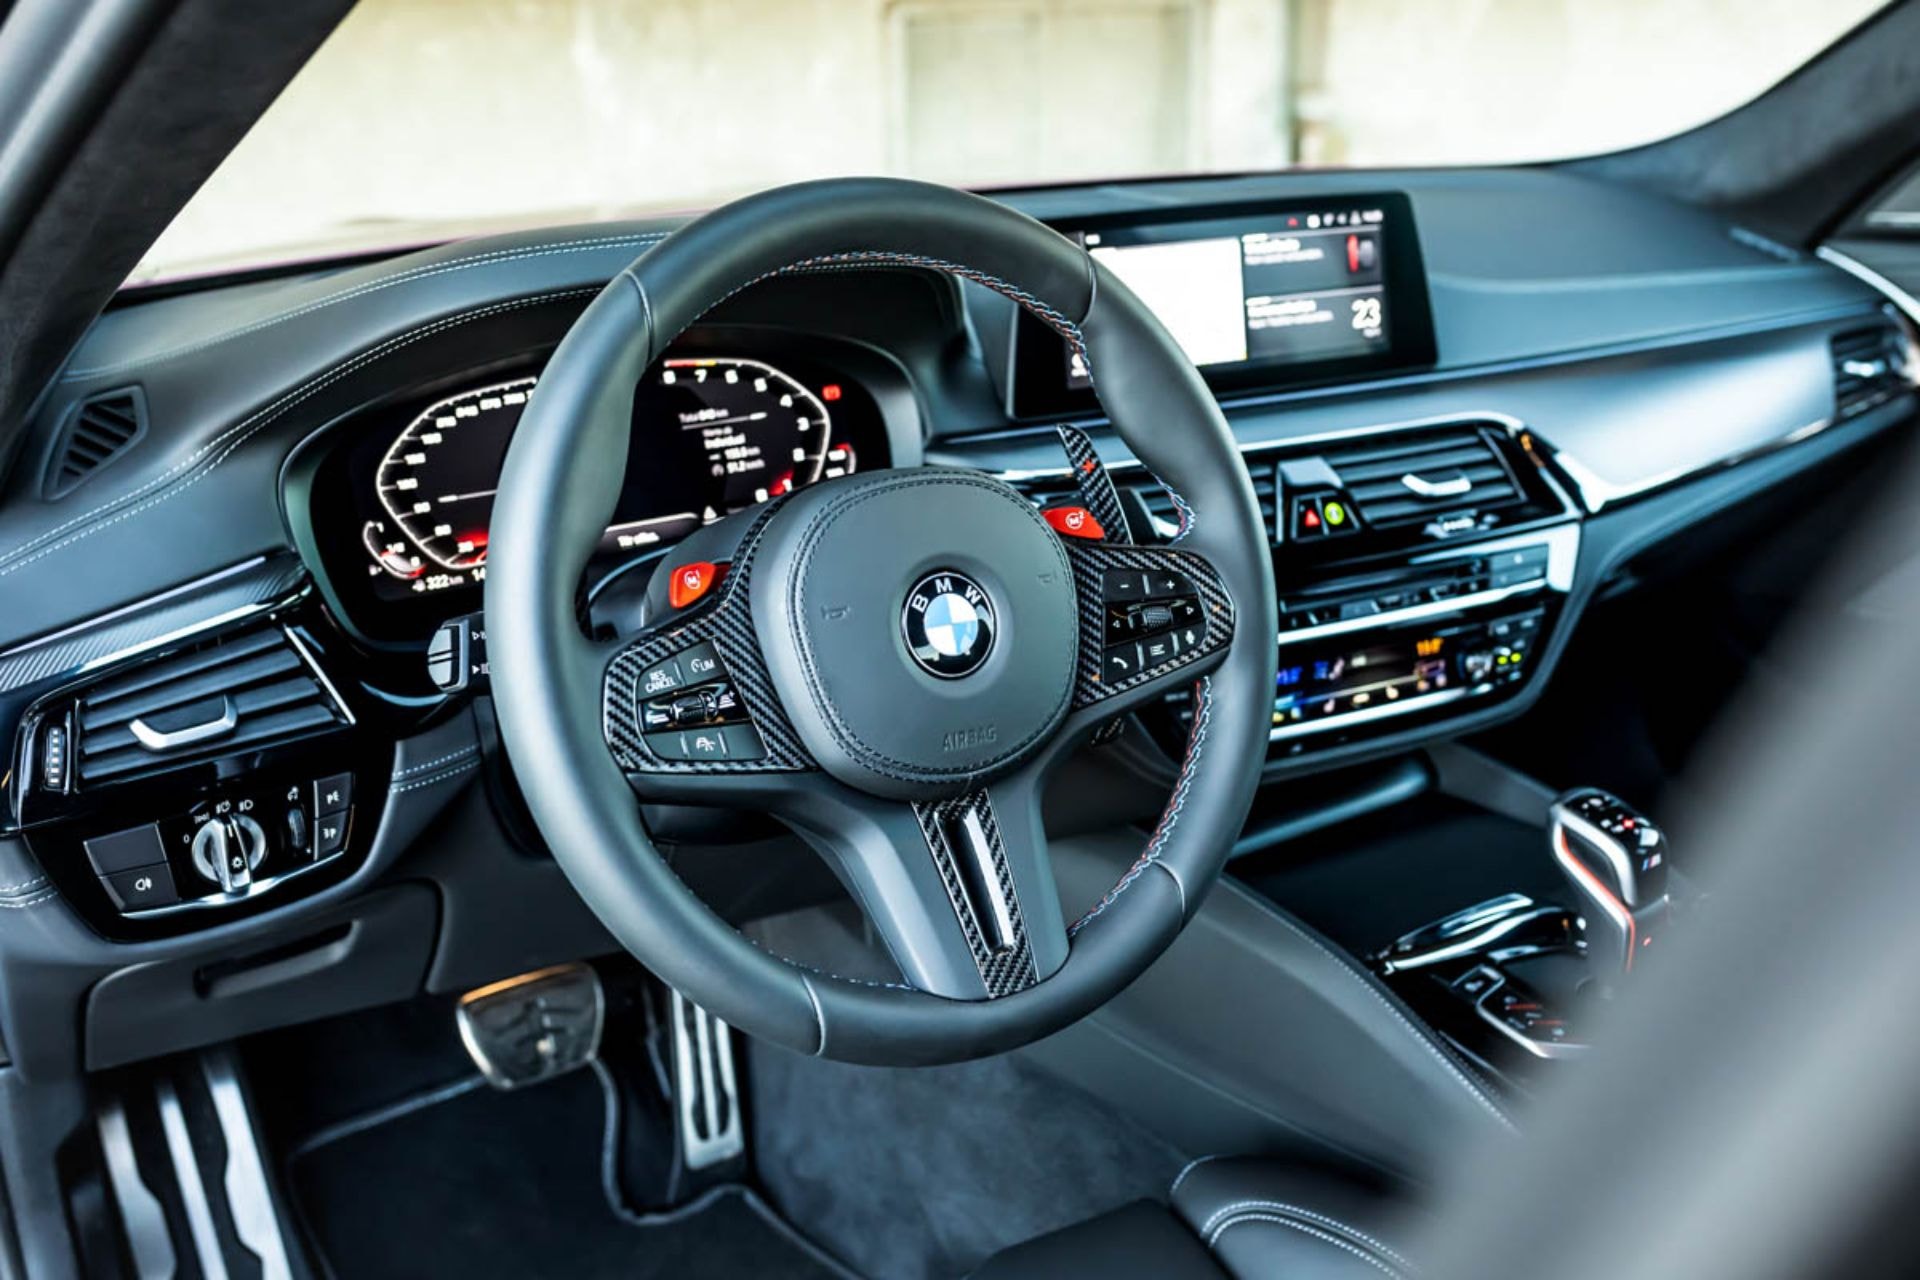 MANHART 打造 800 匹馬力 BMW M5 超性能強化改裝車型